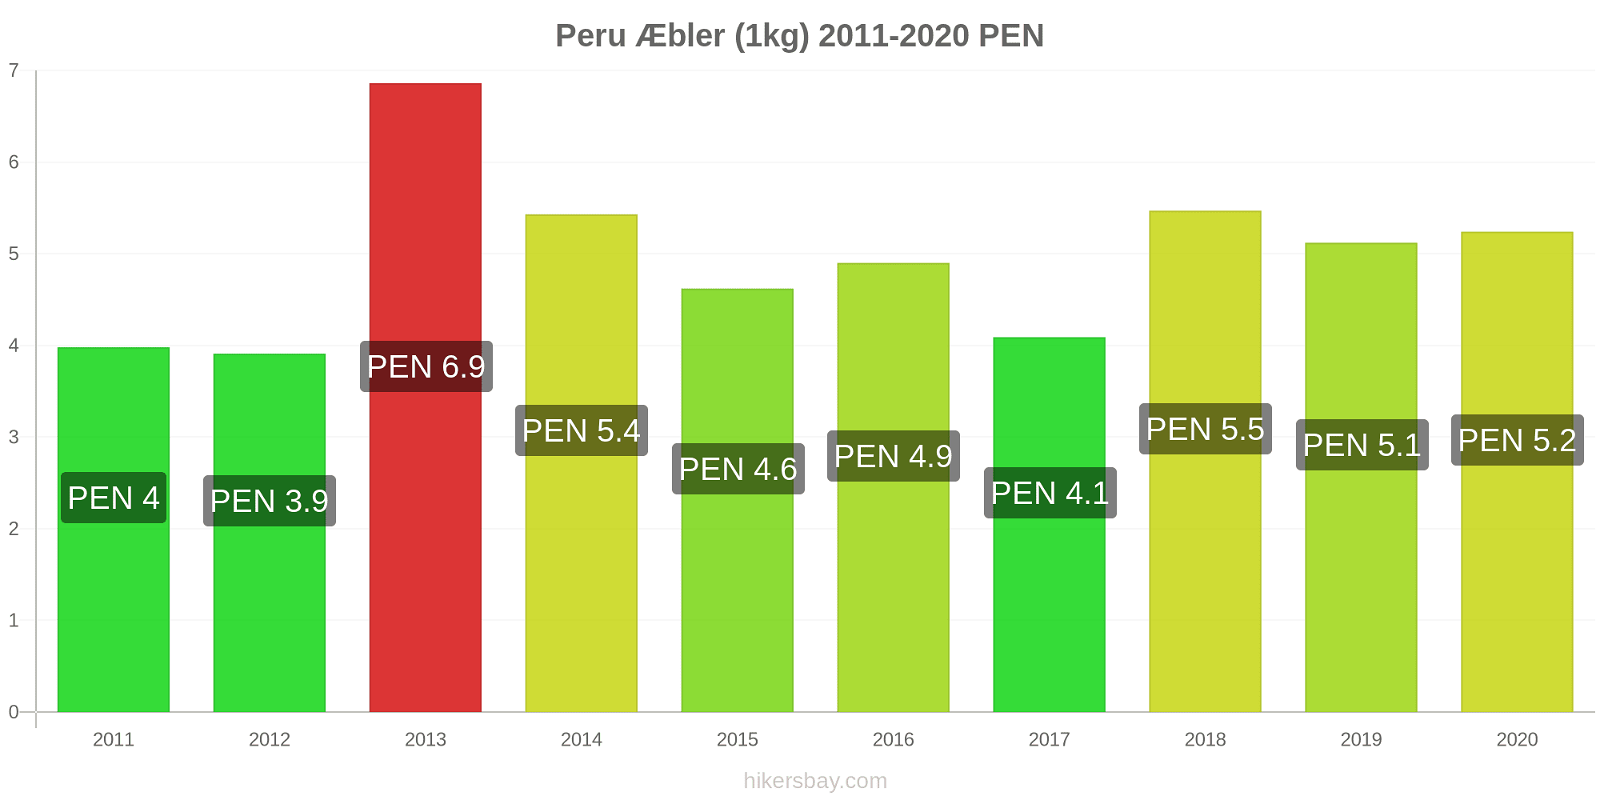 Peru prisændringer Æbler (1kg) hikersbay.com